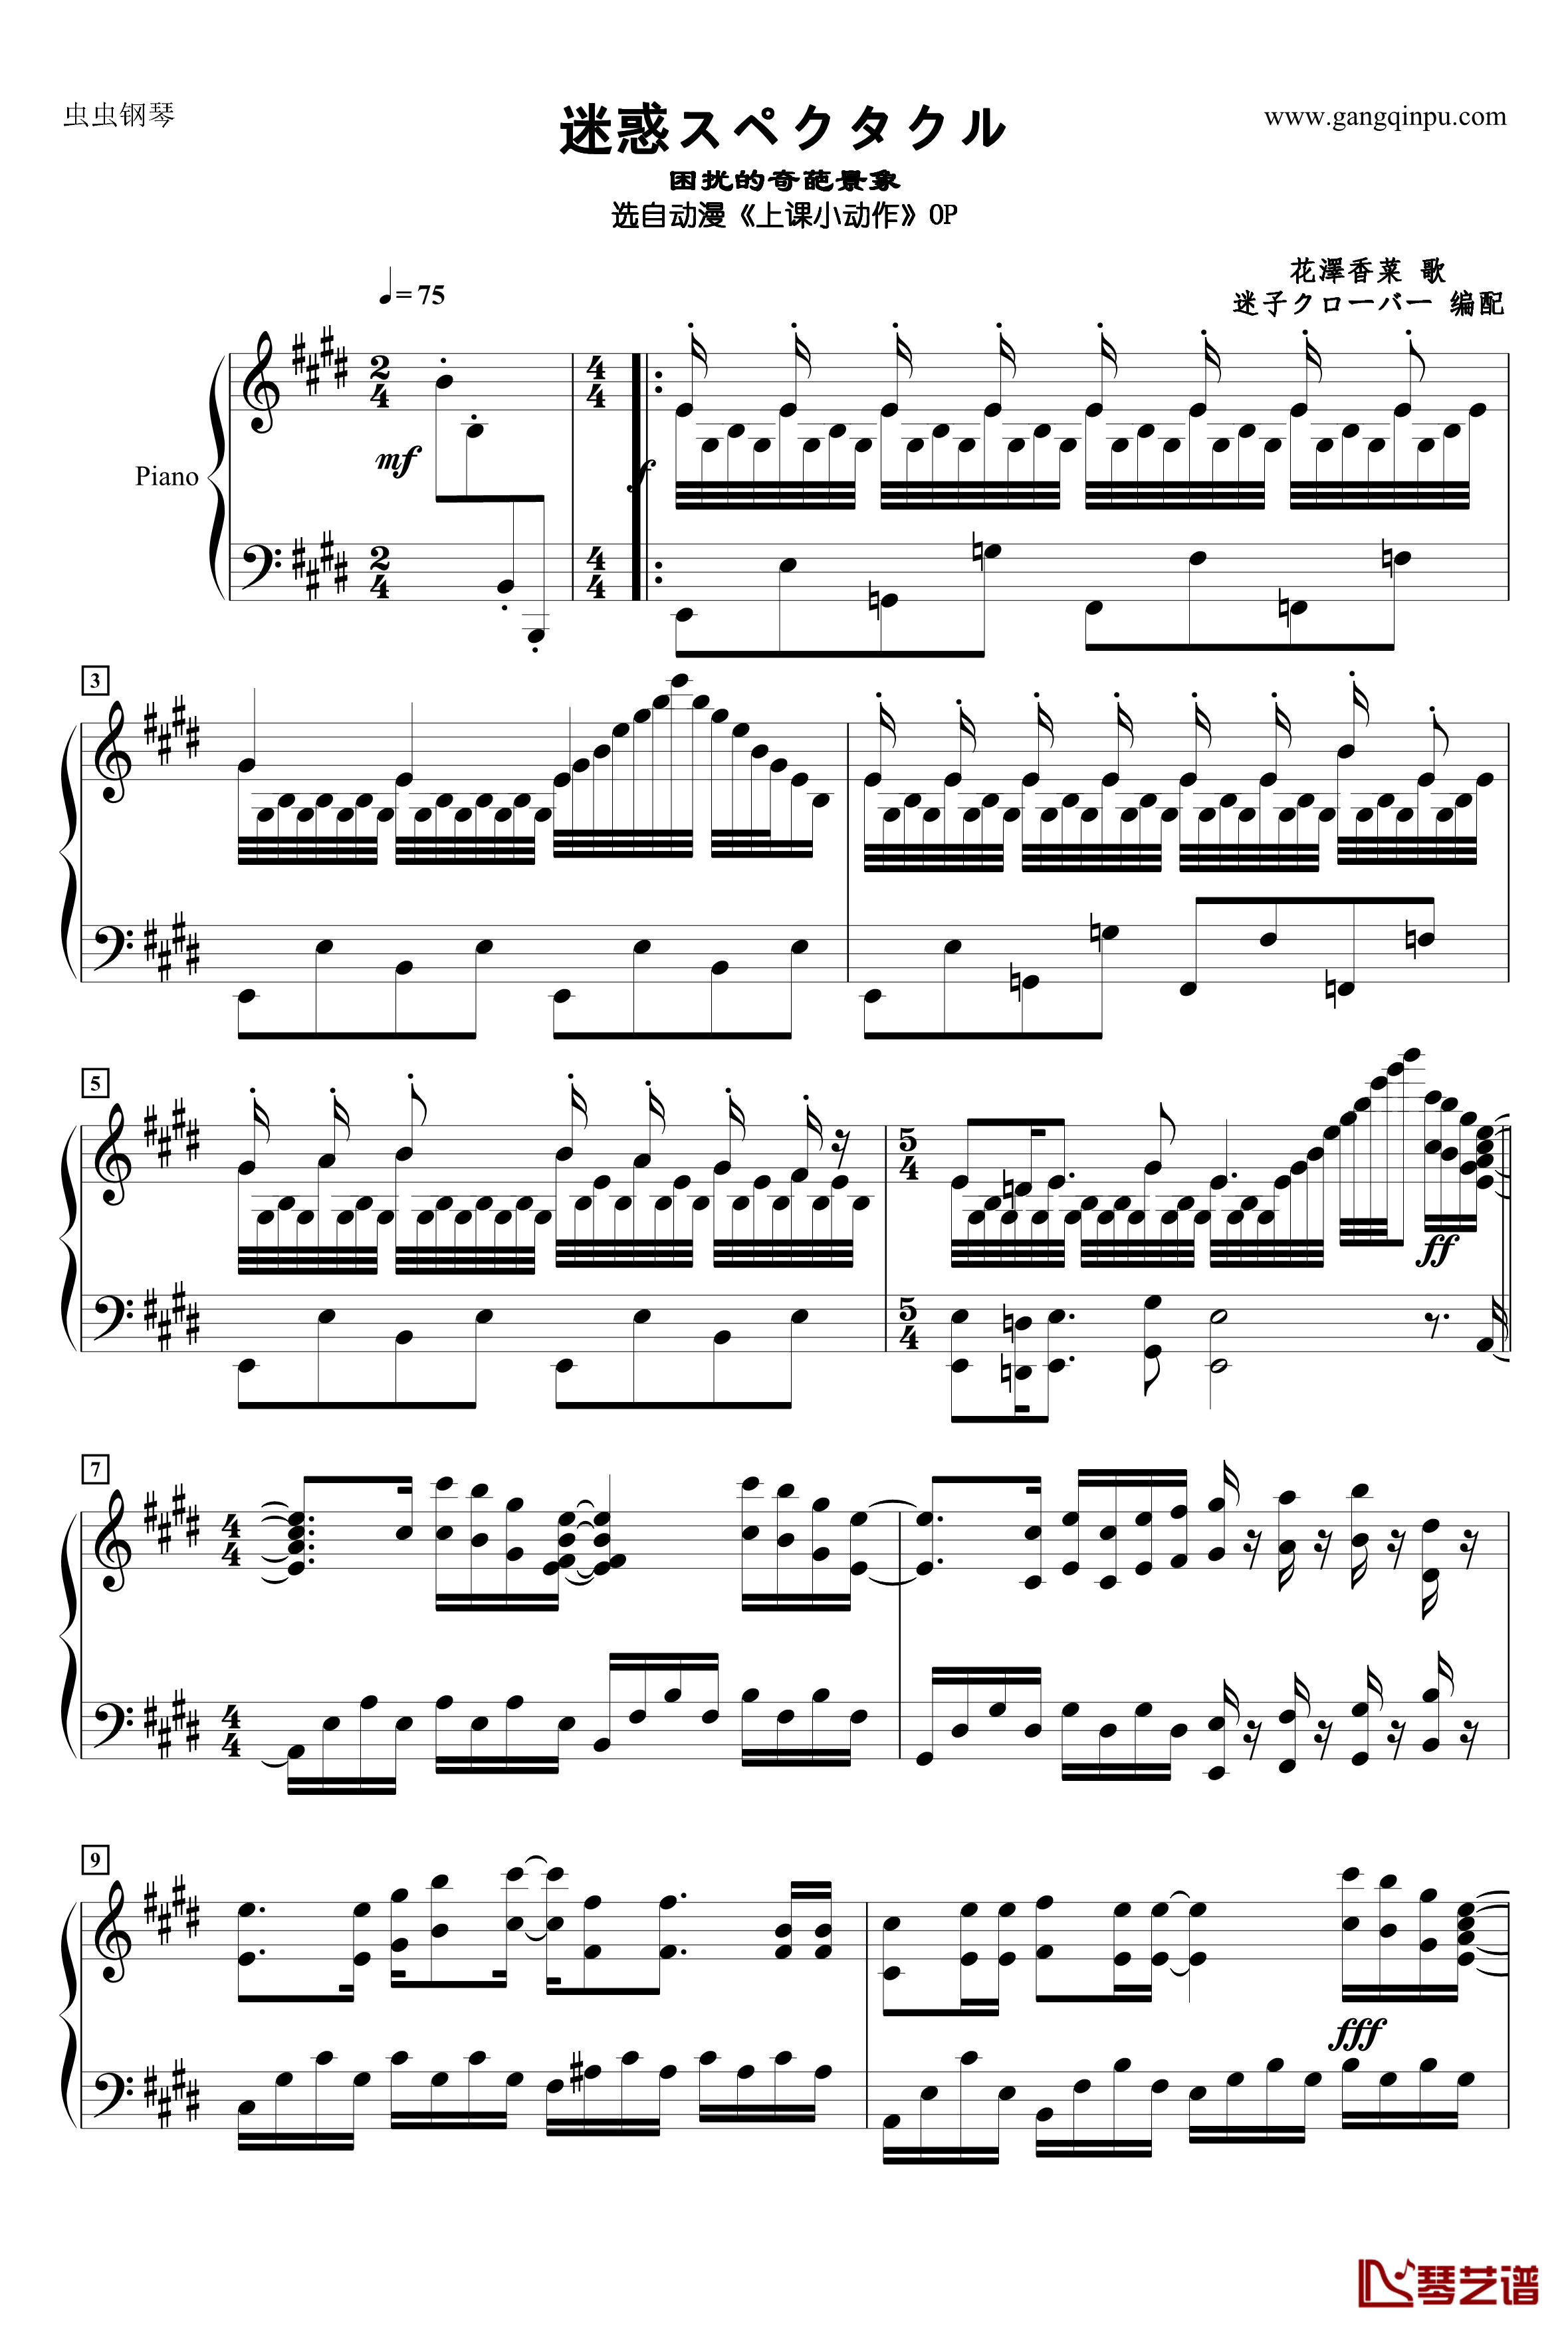 上课小动作钢琴谱-迷惑スペクタクル1